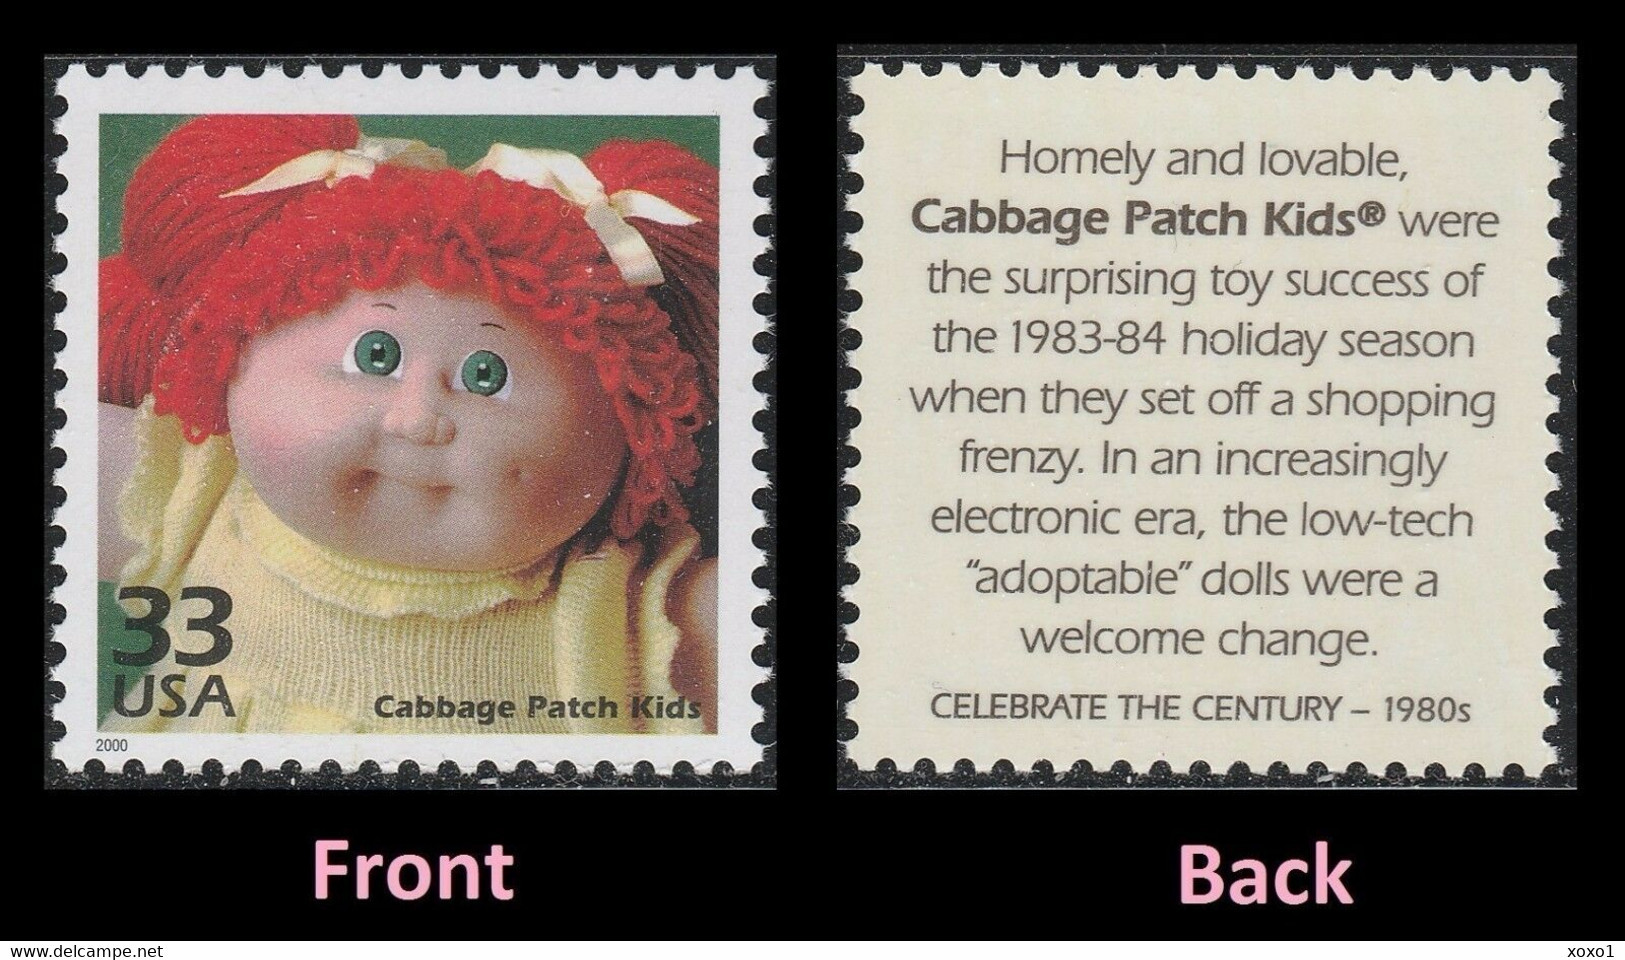 USA 2000 MiNr. 3251 Celebrate The Century 1980s  Childhood "Cabbage Patch Kids" Toy Dolls 1v MNH ** 0,80 € - Dolls